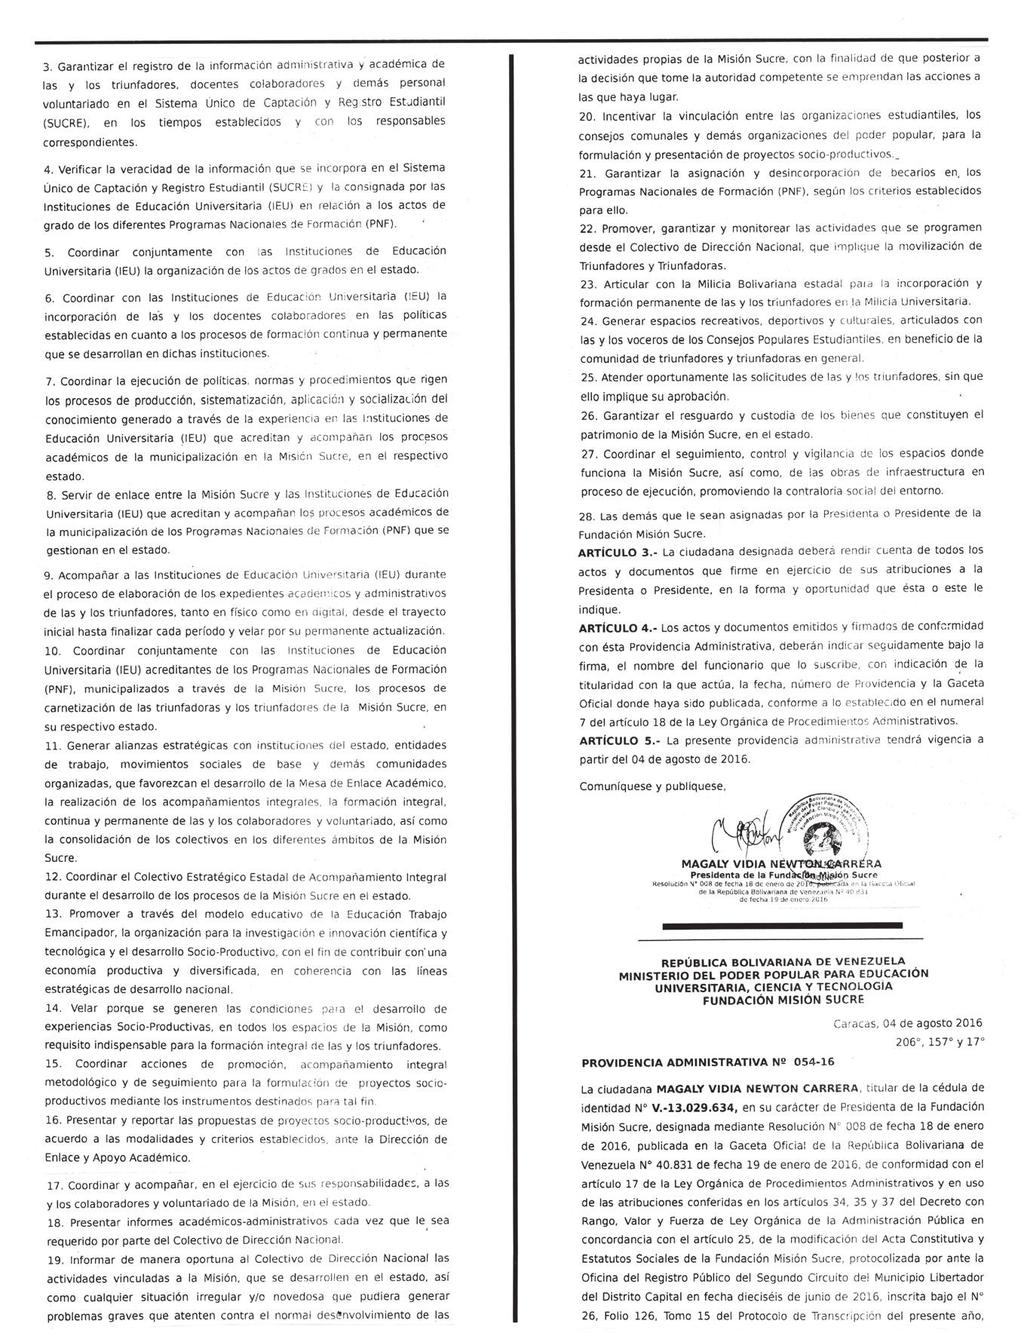 430.030 GACETA OFICIAL DE LA REPÚBLICA